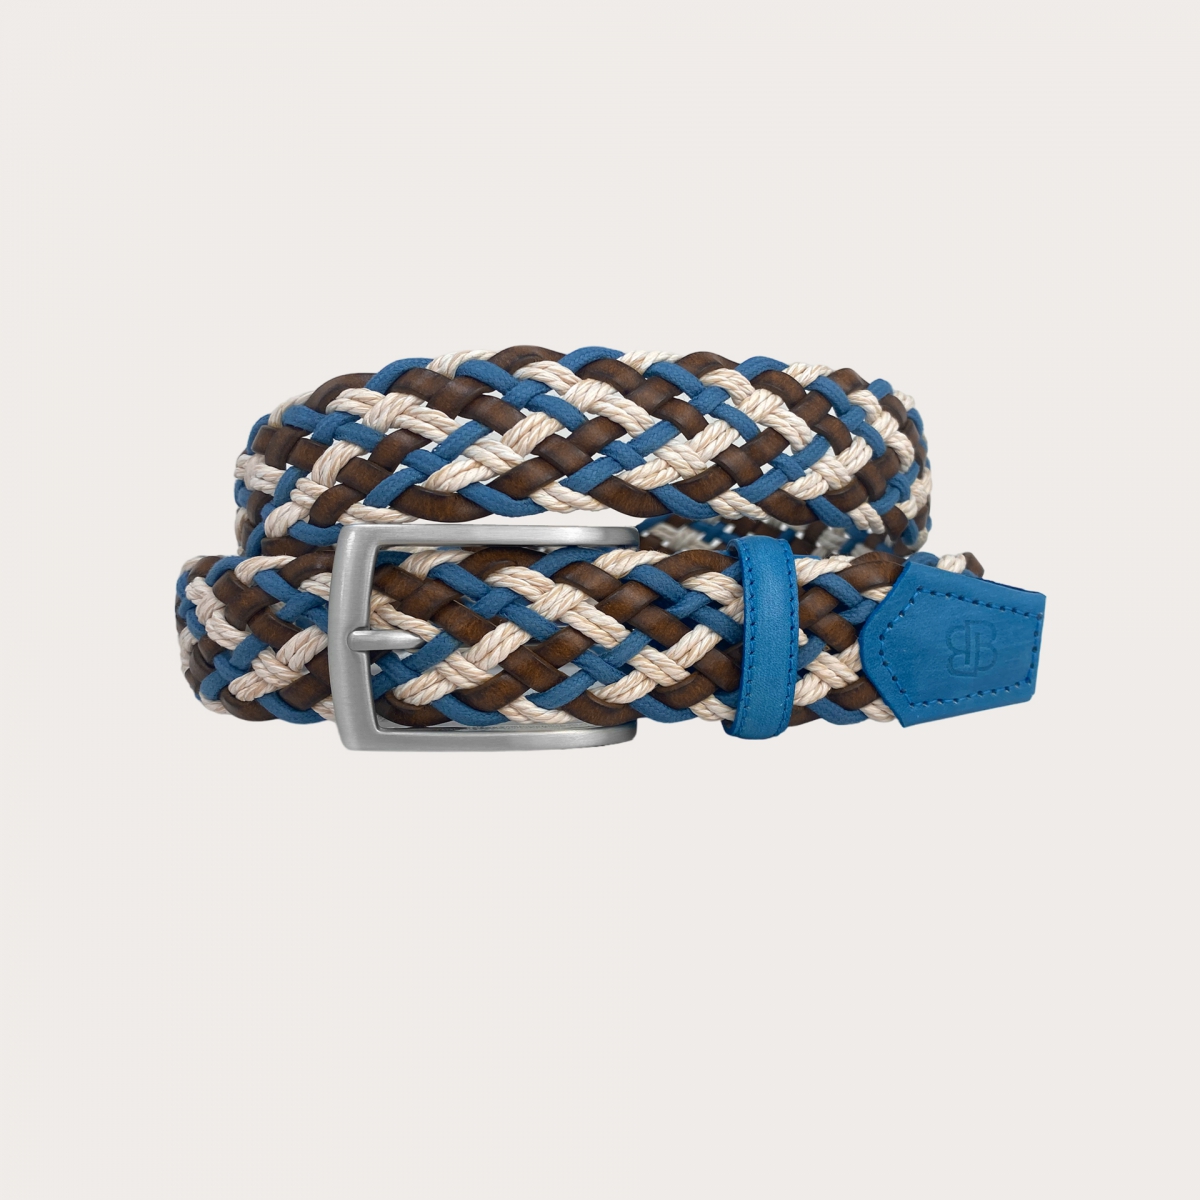 BRUCLE Cinturón trenzado de cuero y algodón marrón, blanco y azul